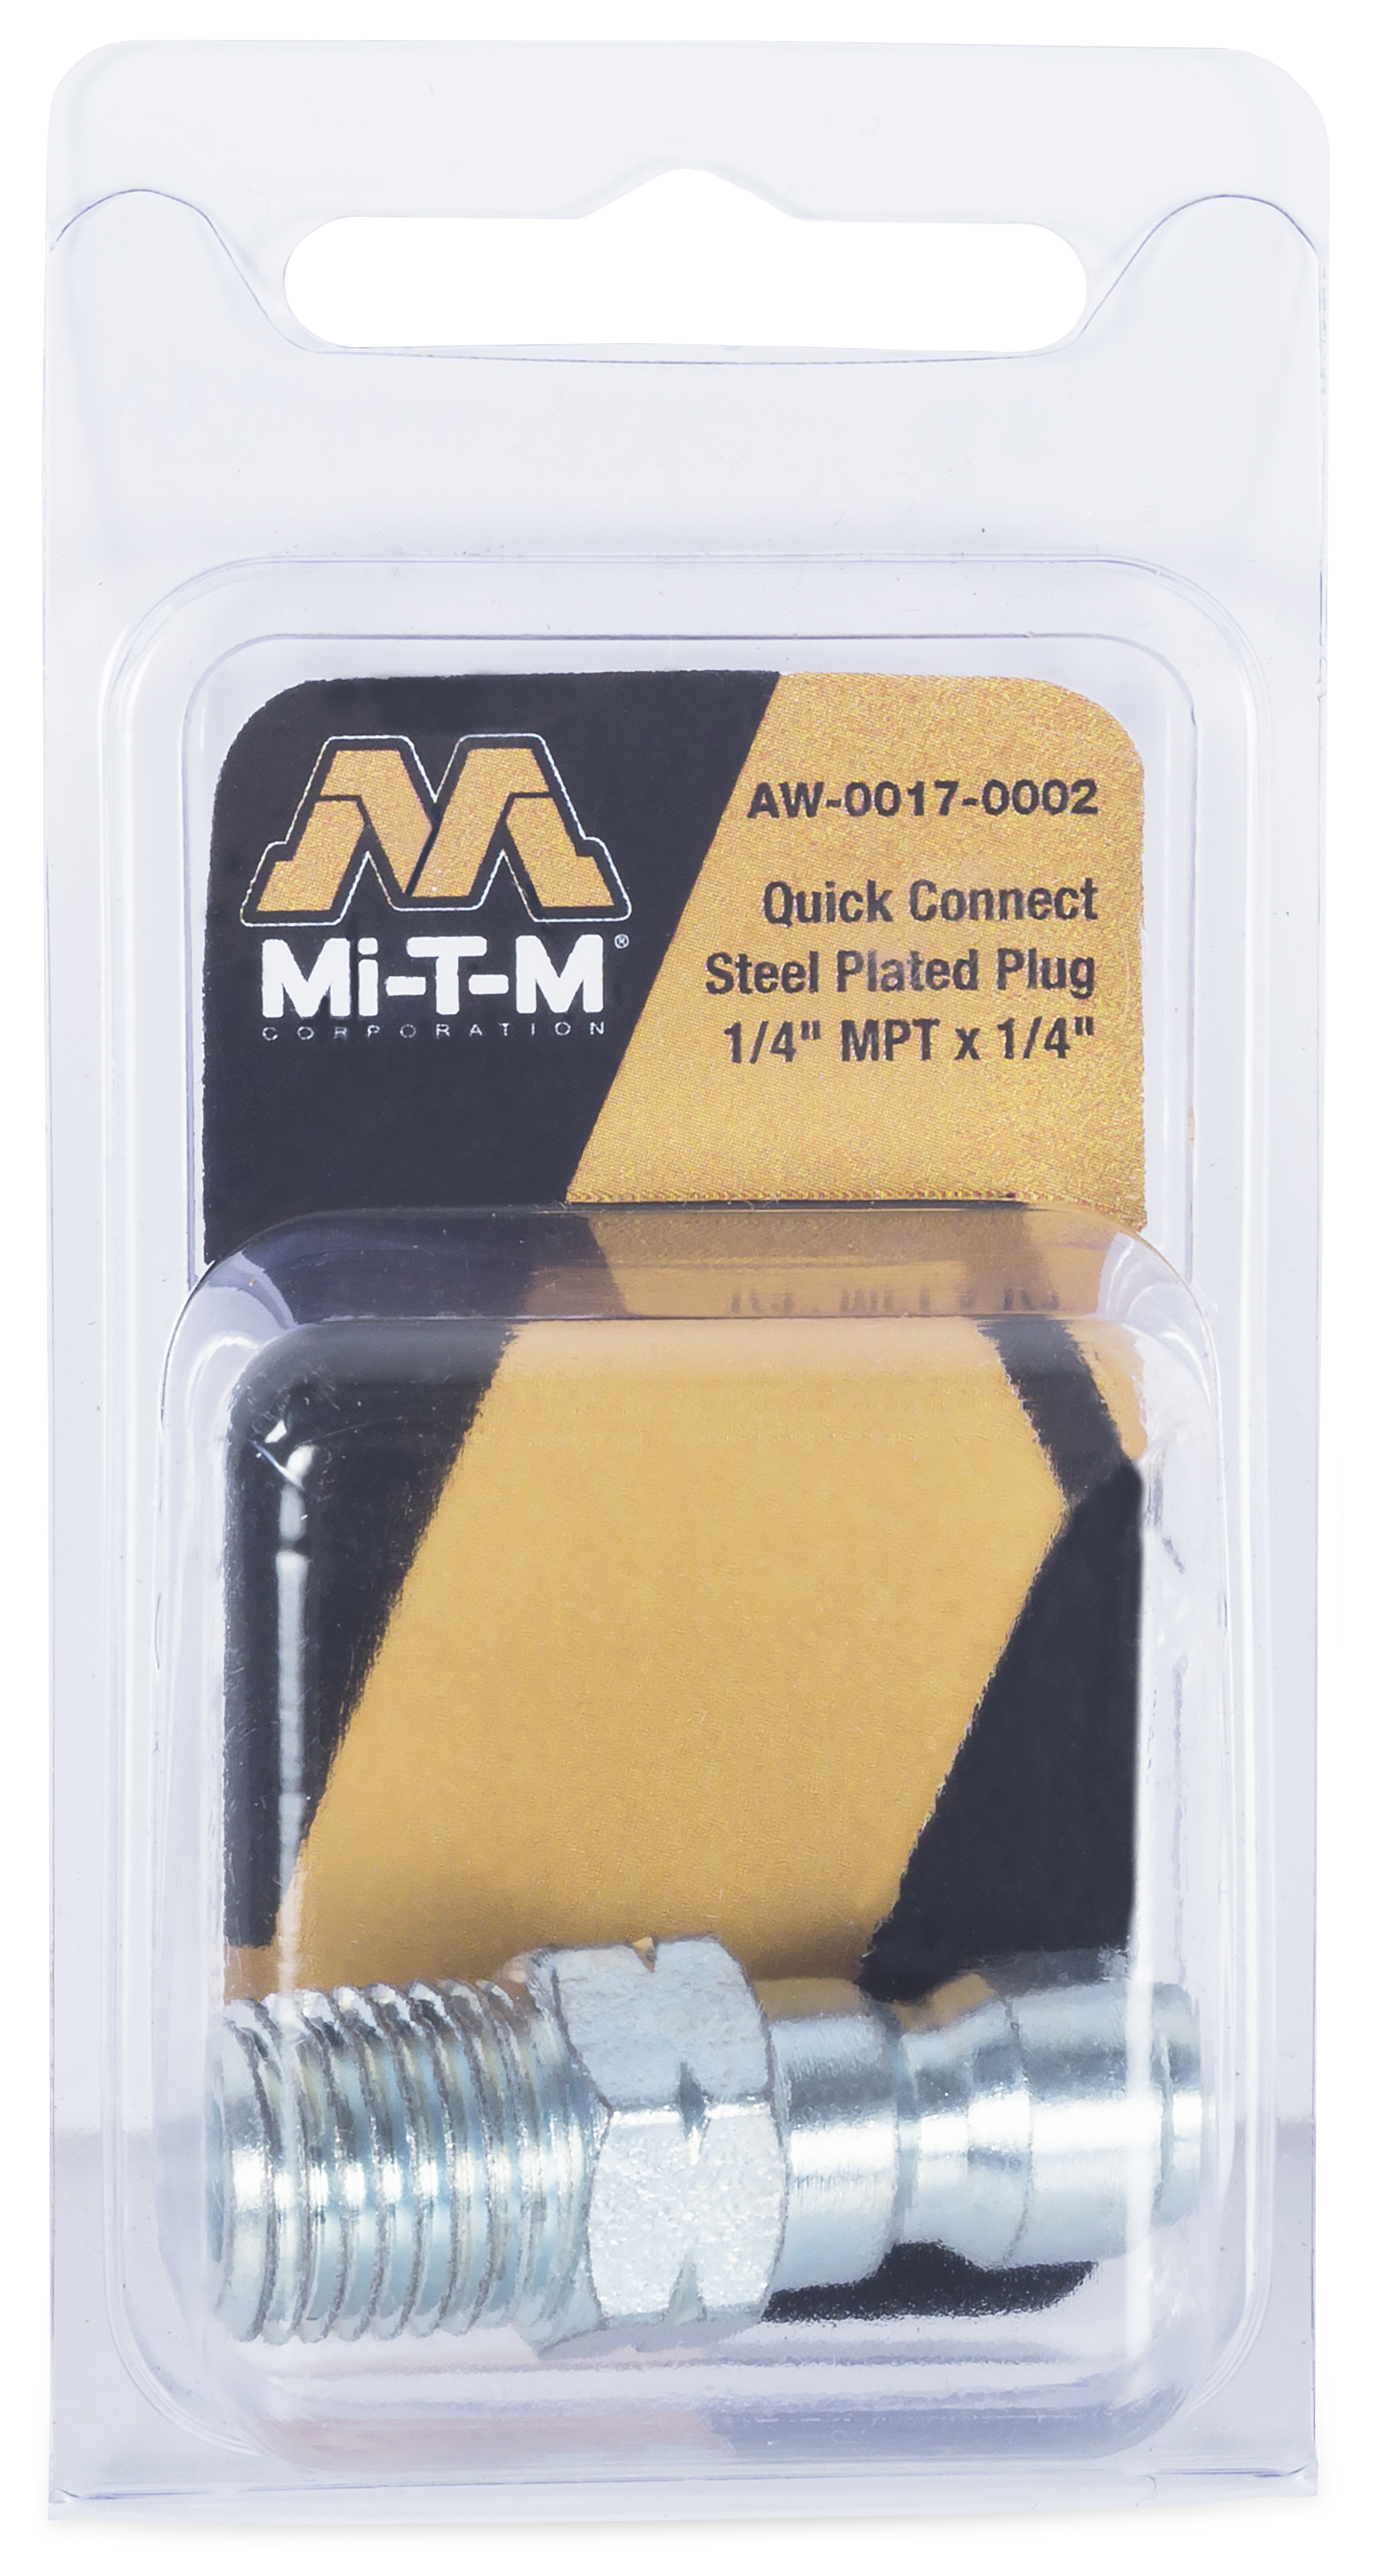 Pressure Washer Twist Type Quick Connector Socket Fits Mi-T-M Mitm 331212 